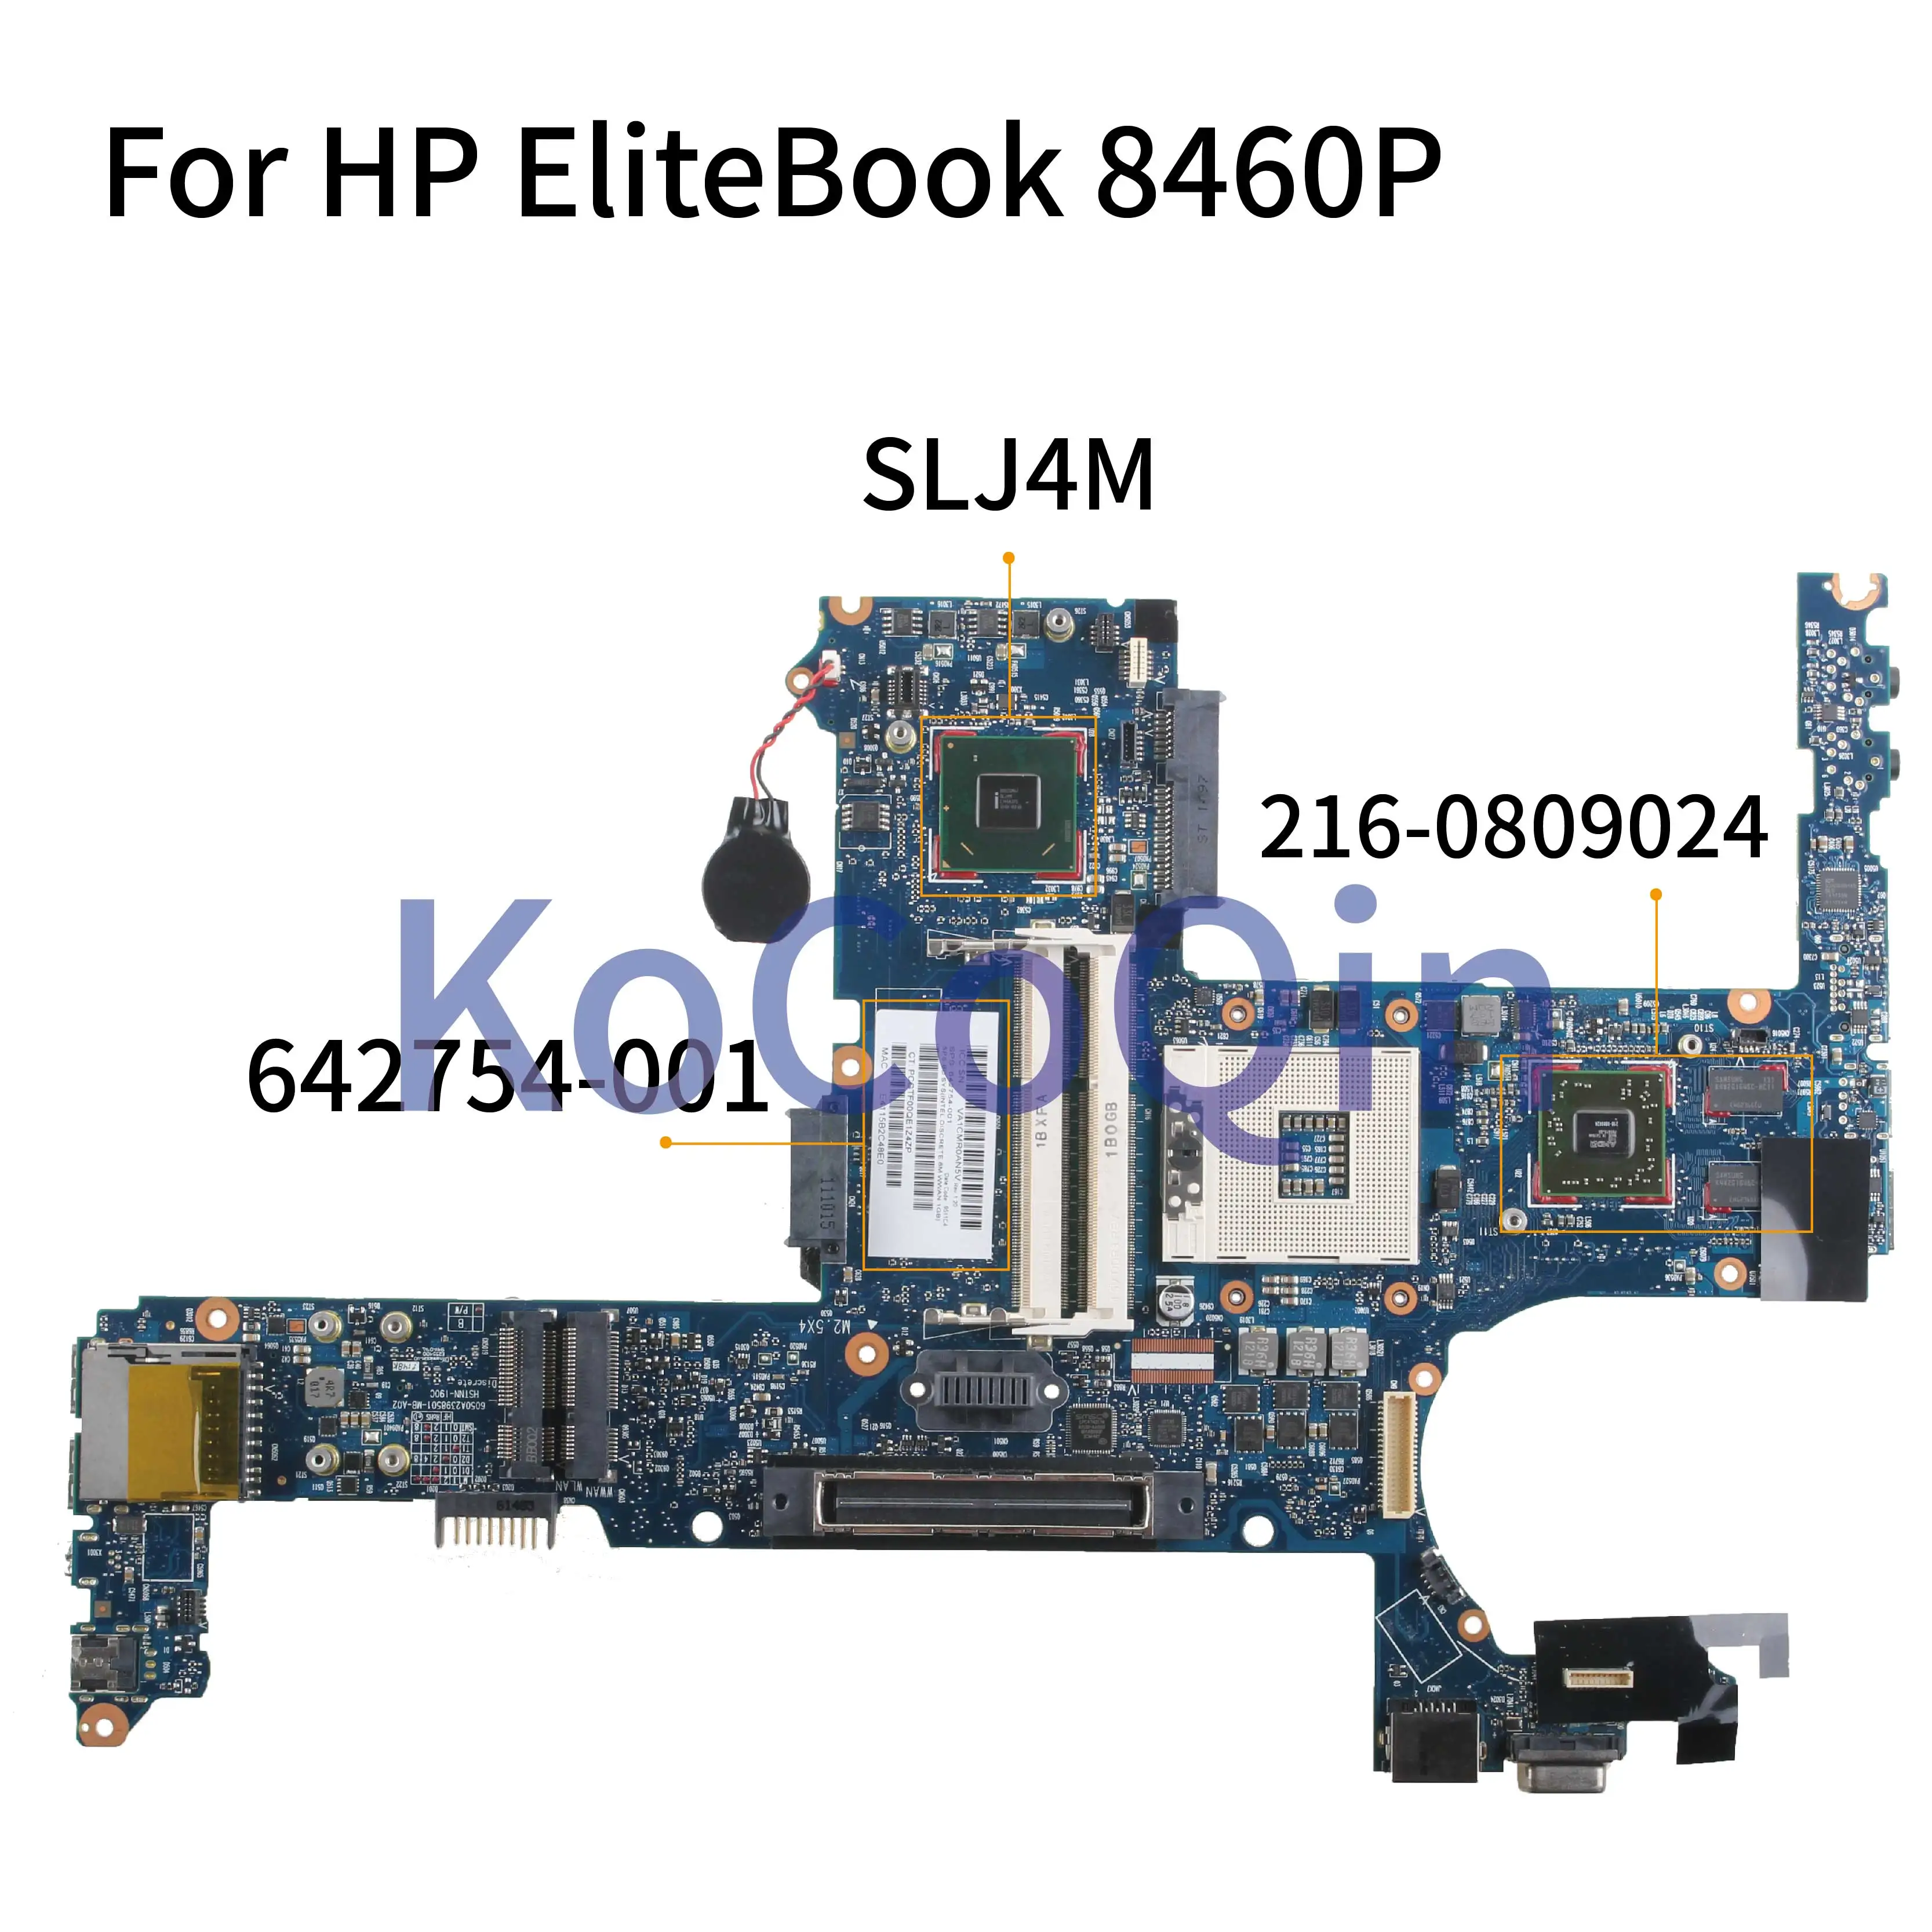 KoCoQin материнская плата для ноутбука hp EliteBook 6460B 8460P материнская плата 642754-001 642754-501 6050A2398501 SLJ4M 216-0809024